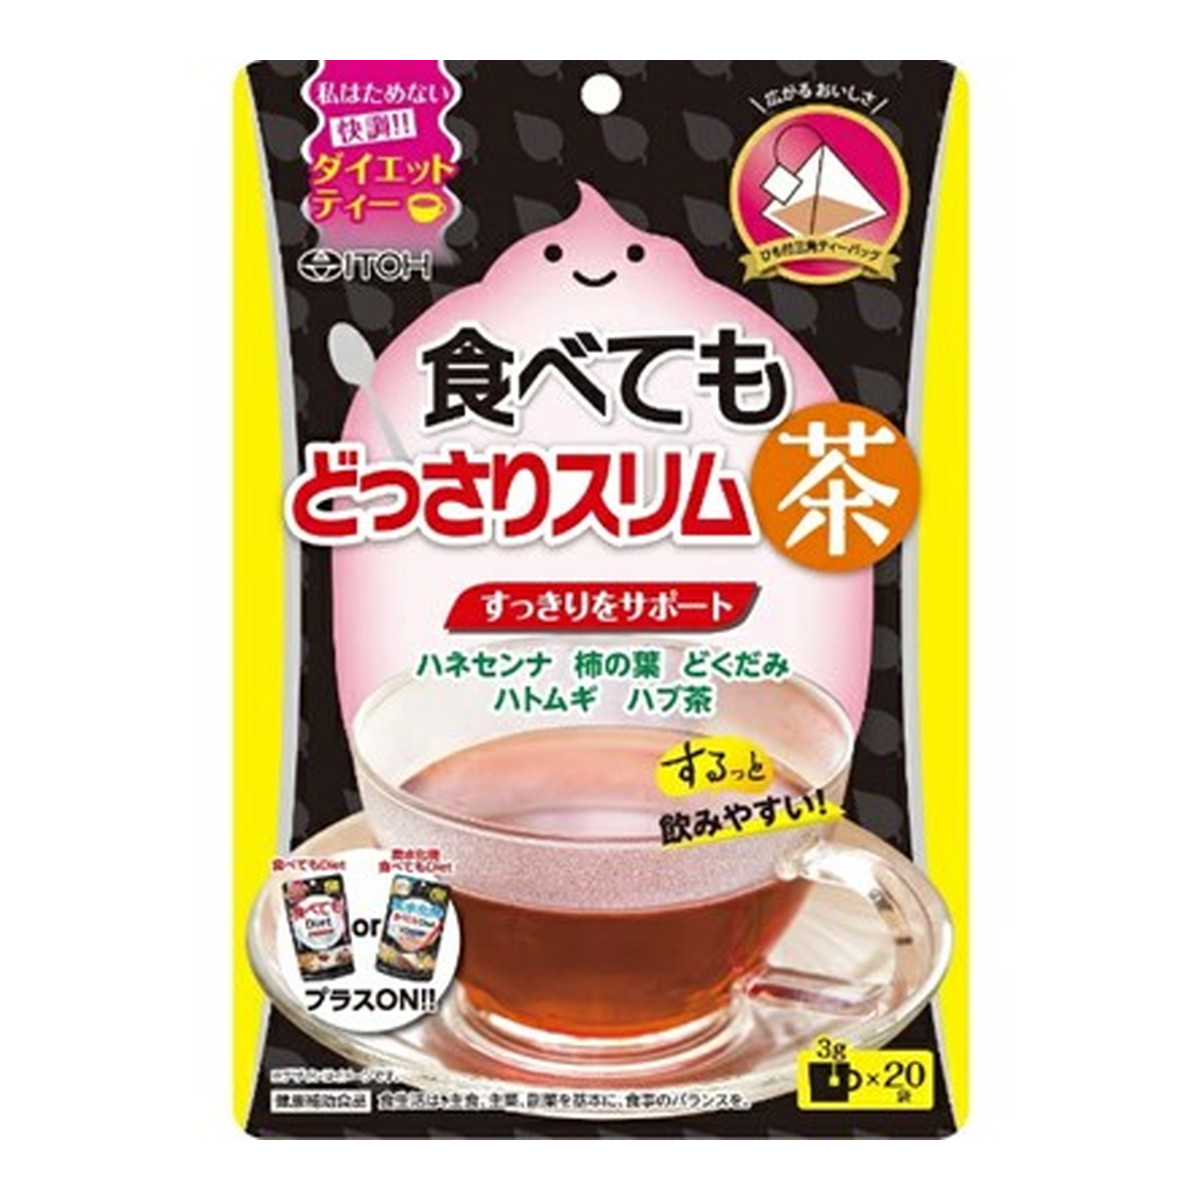 再再販 井藤漢方製薬 食べてもどっさりスリム茶 3g 袋 ダイエットティー Toyama Nozai Co Jp